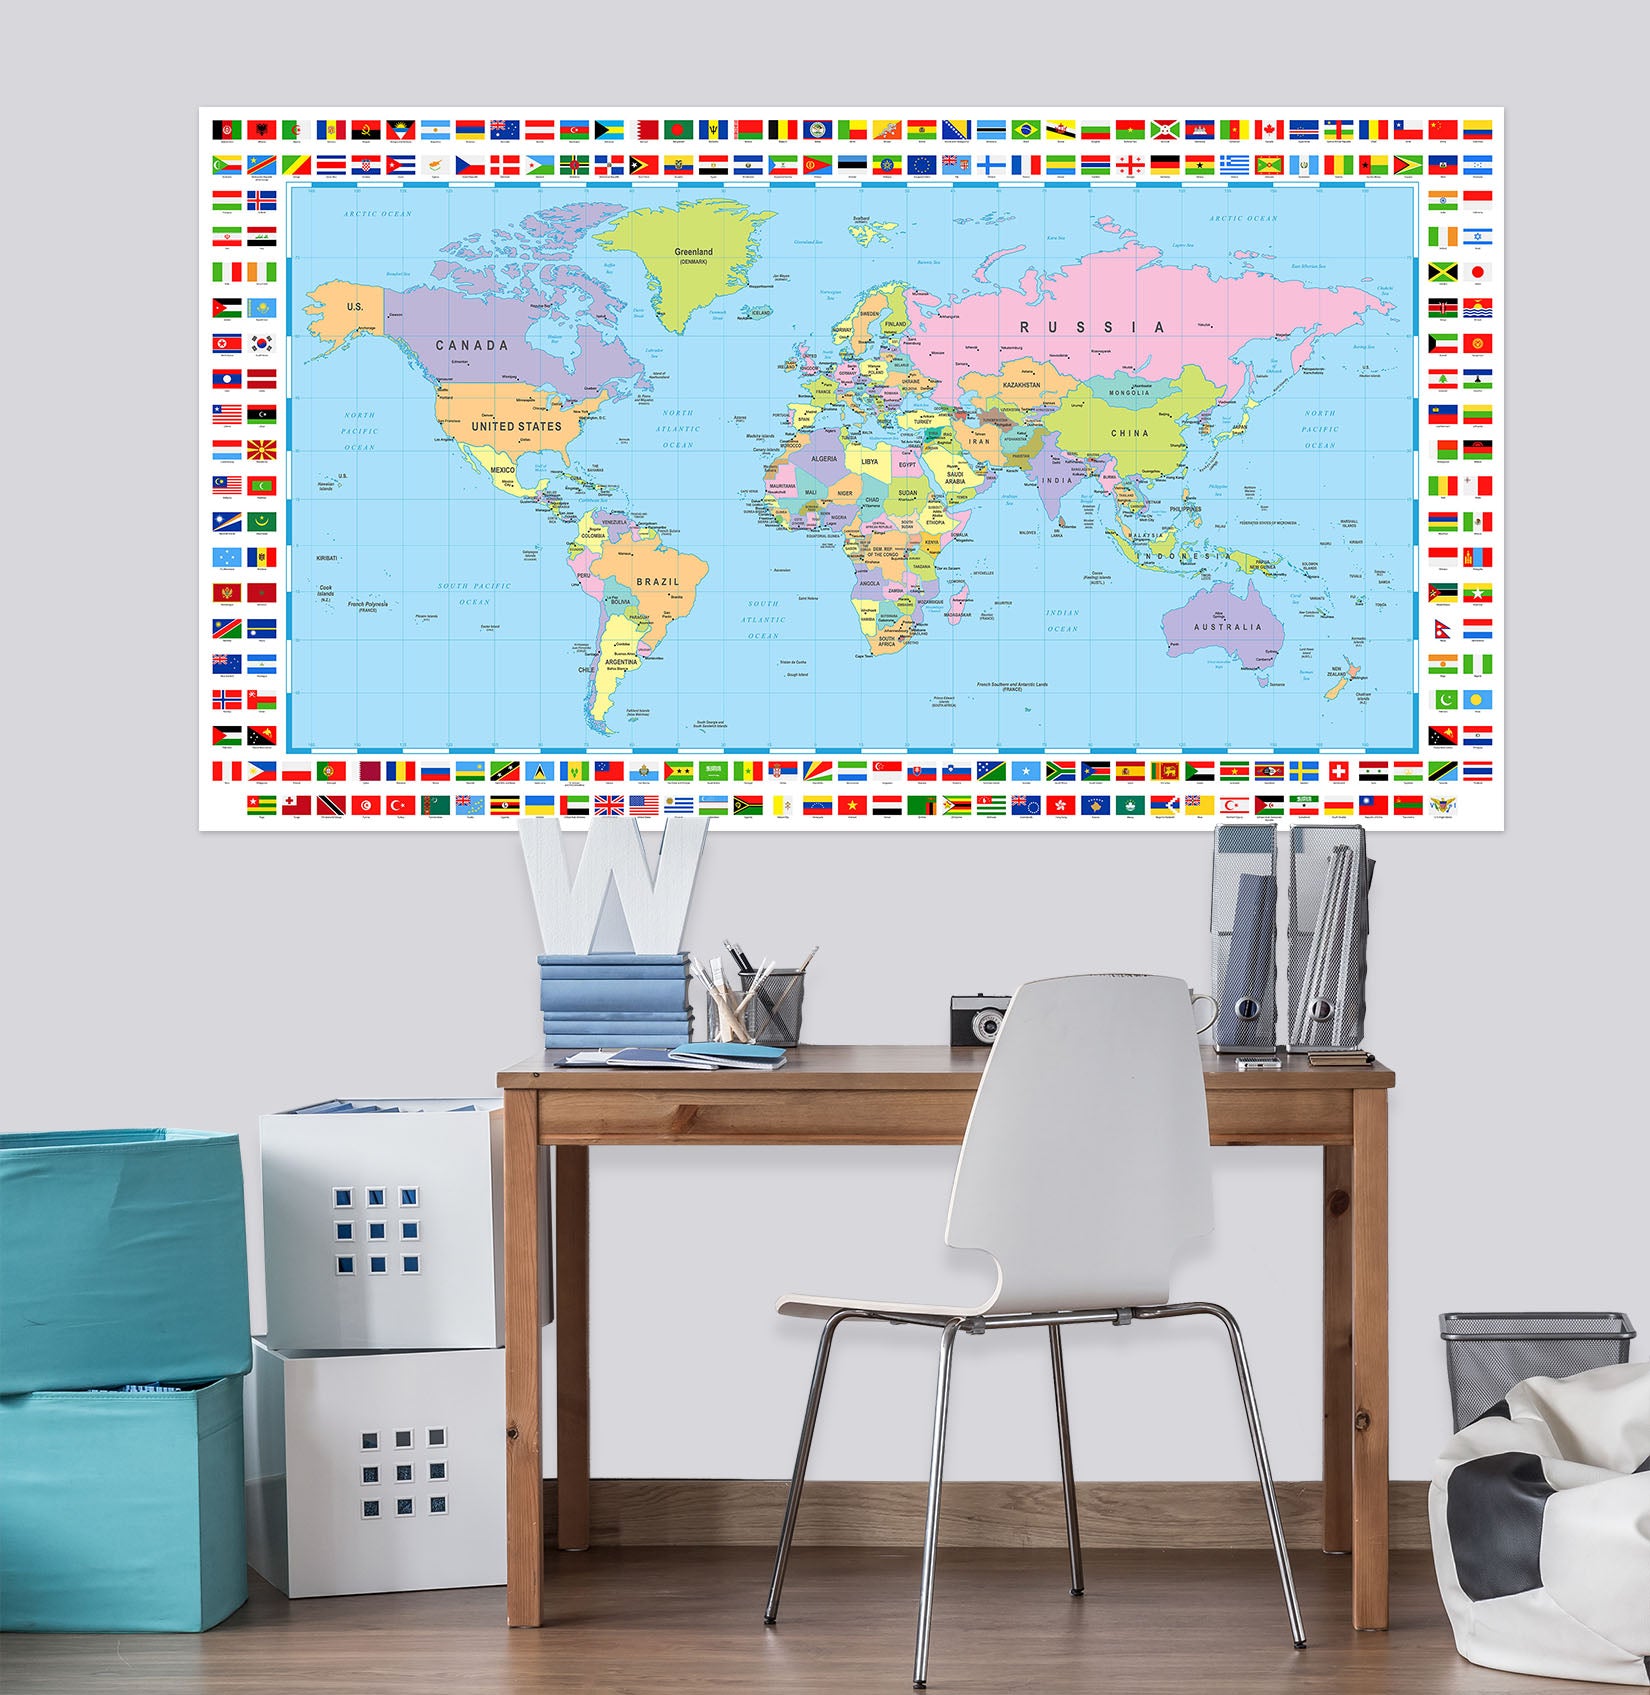 3D World Islands 226 World Map Wall Sticker